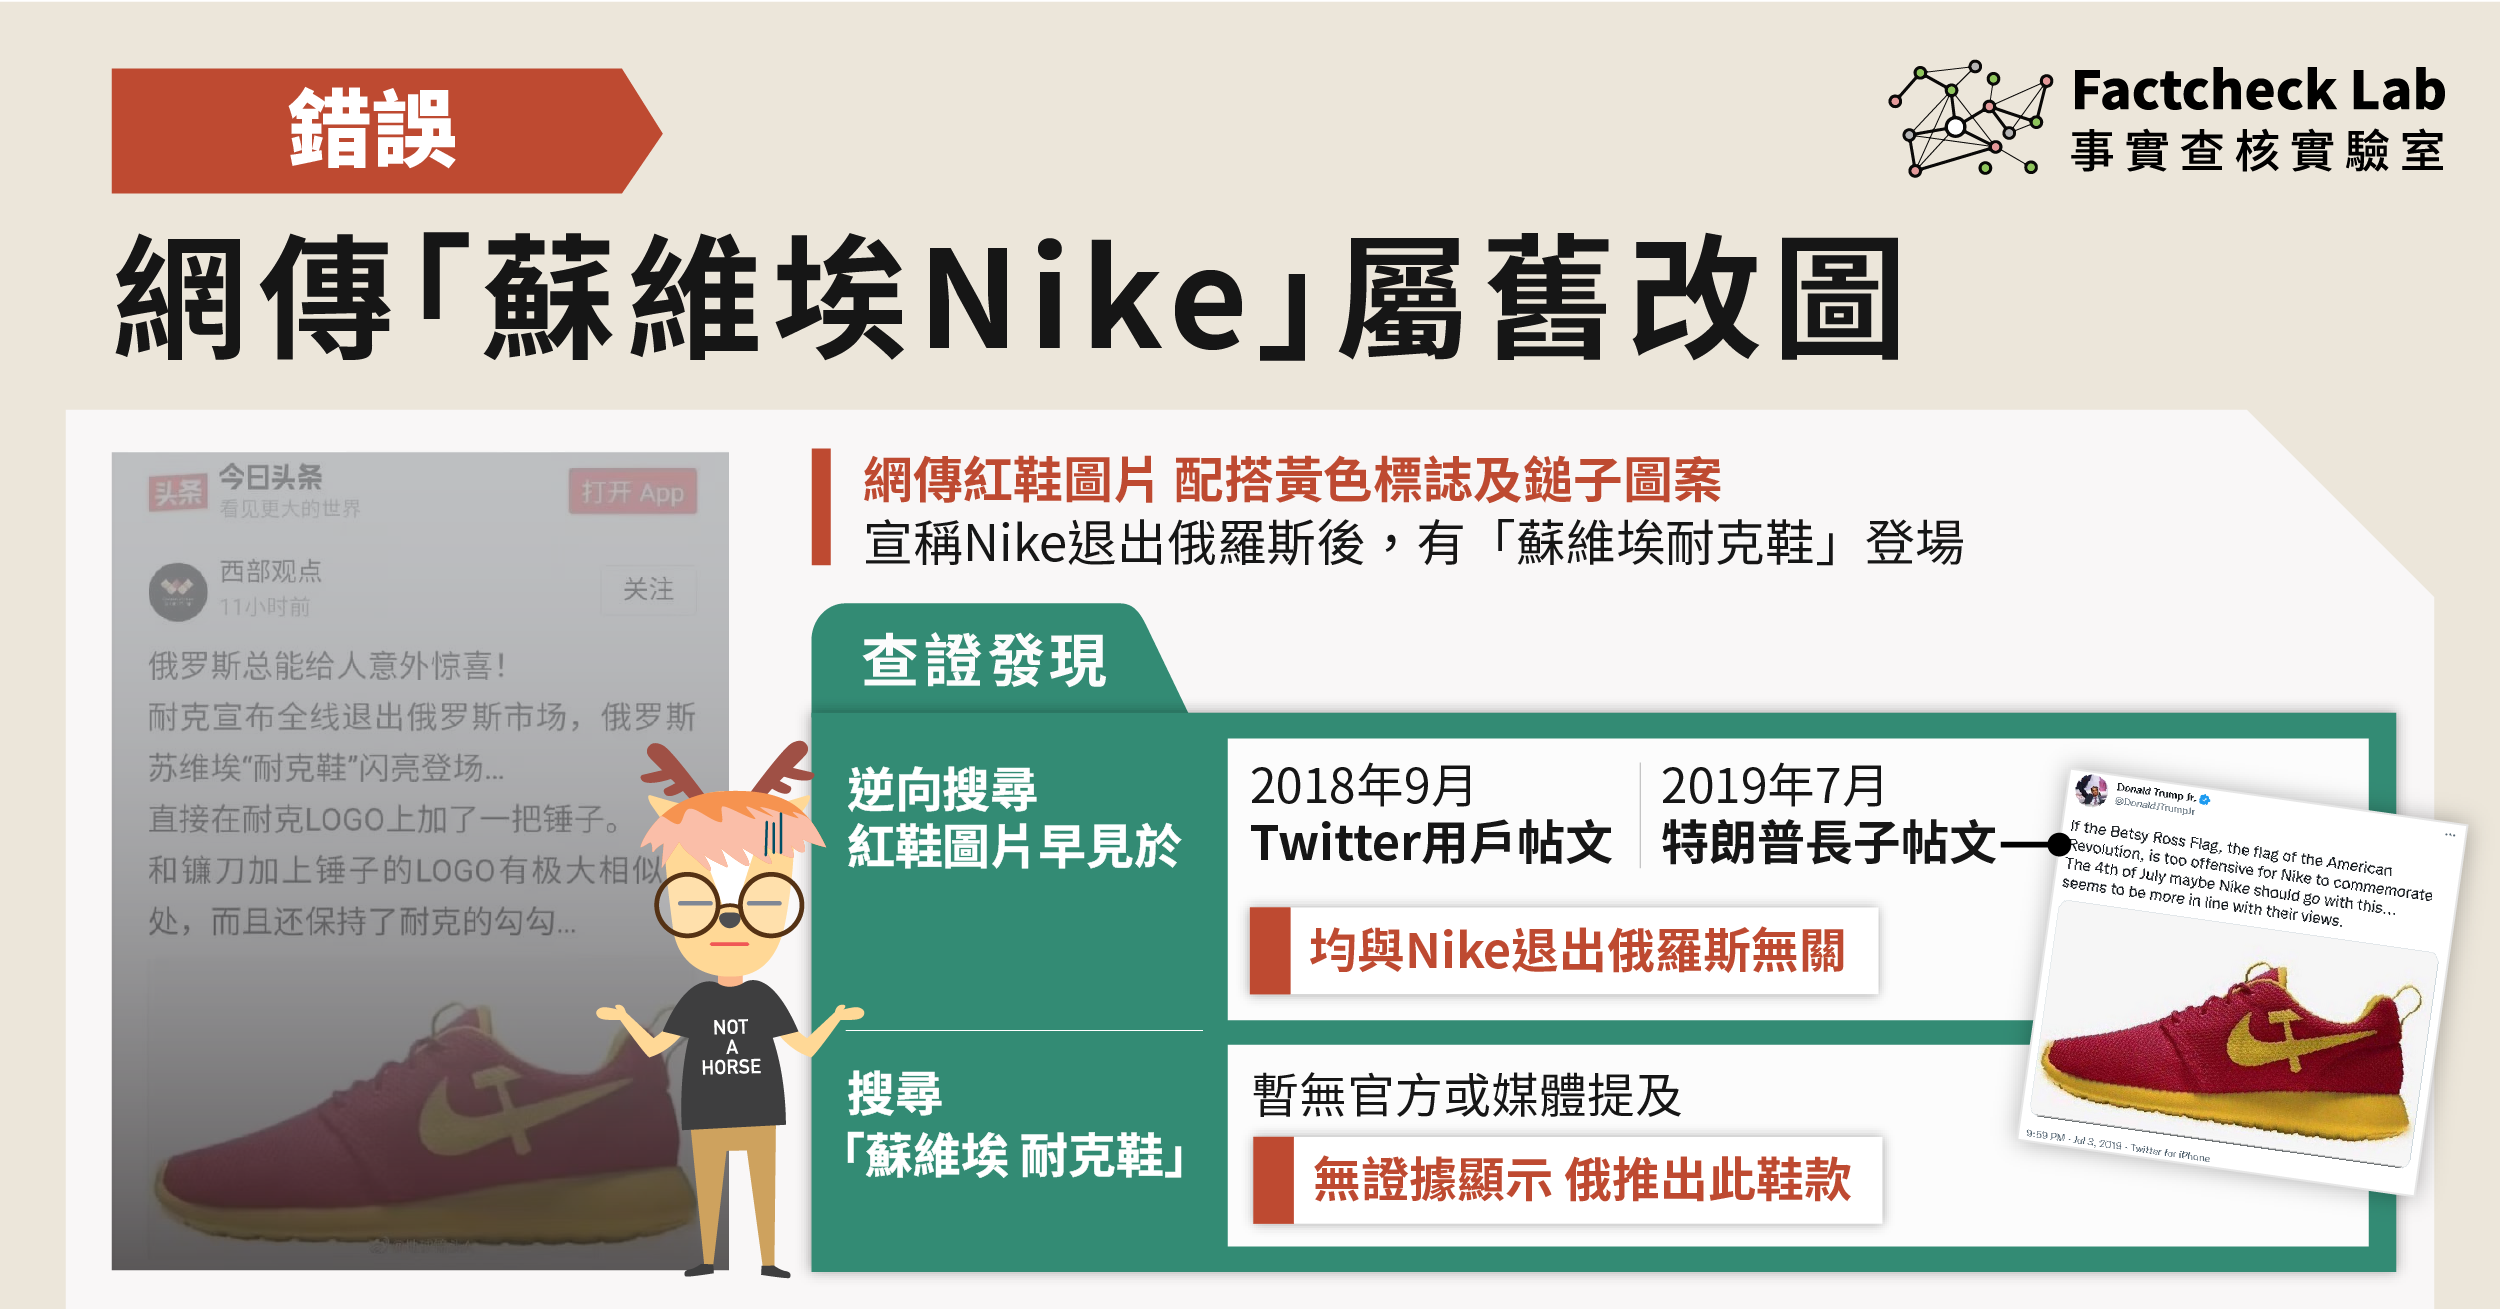 無證據顯示巿場推出「蘇維埃Nike」，網傳圖片屬舊改圖